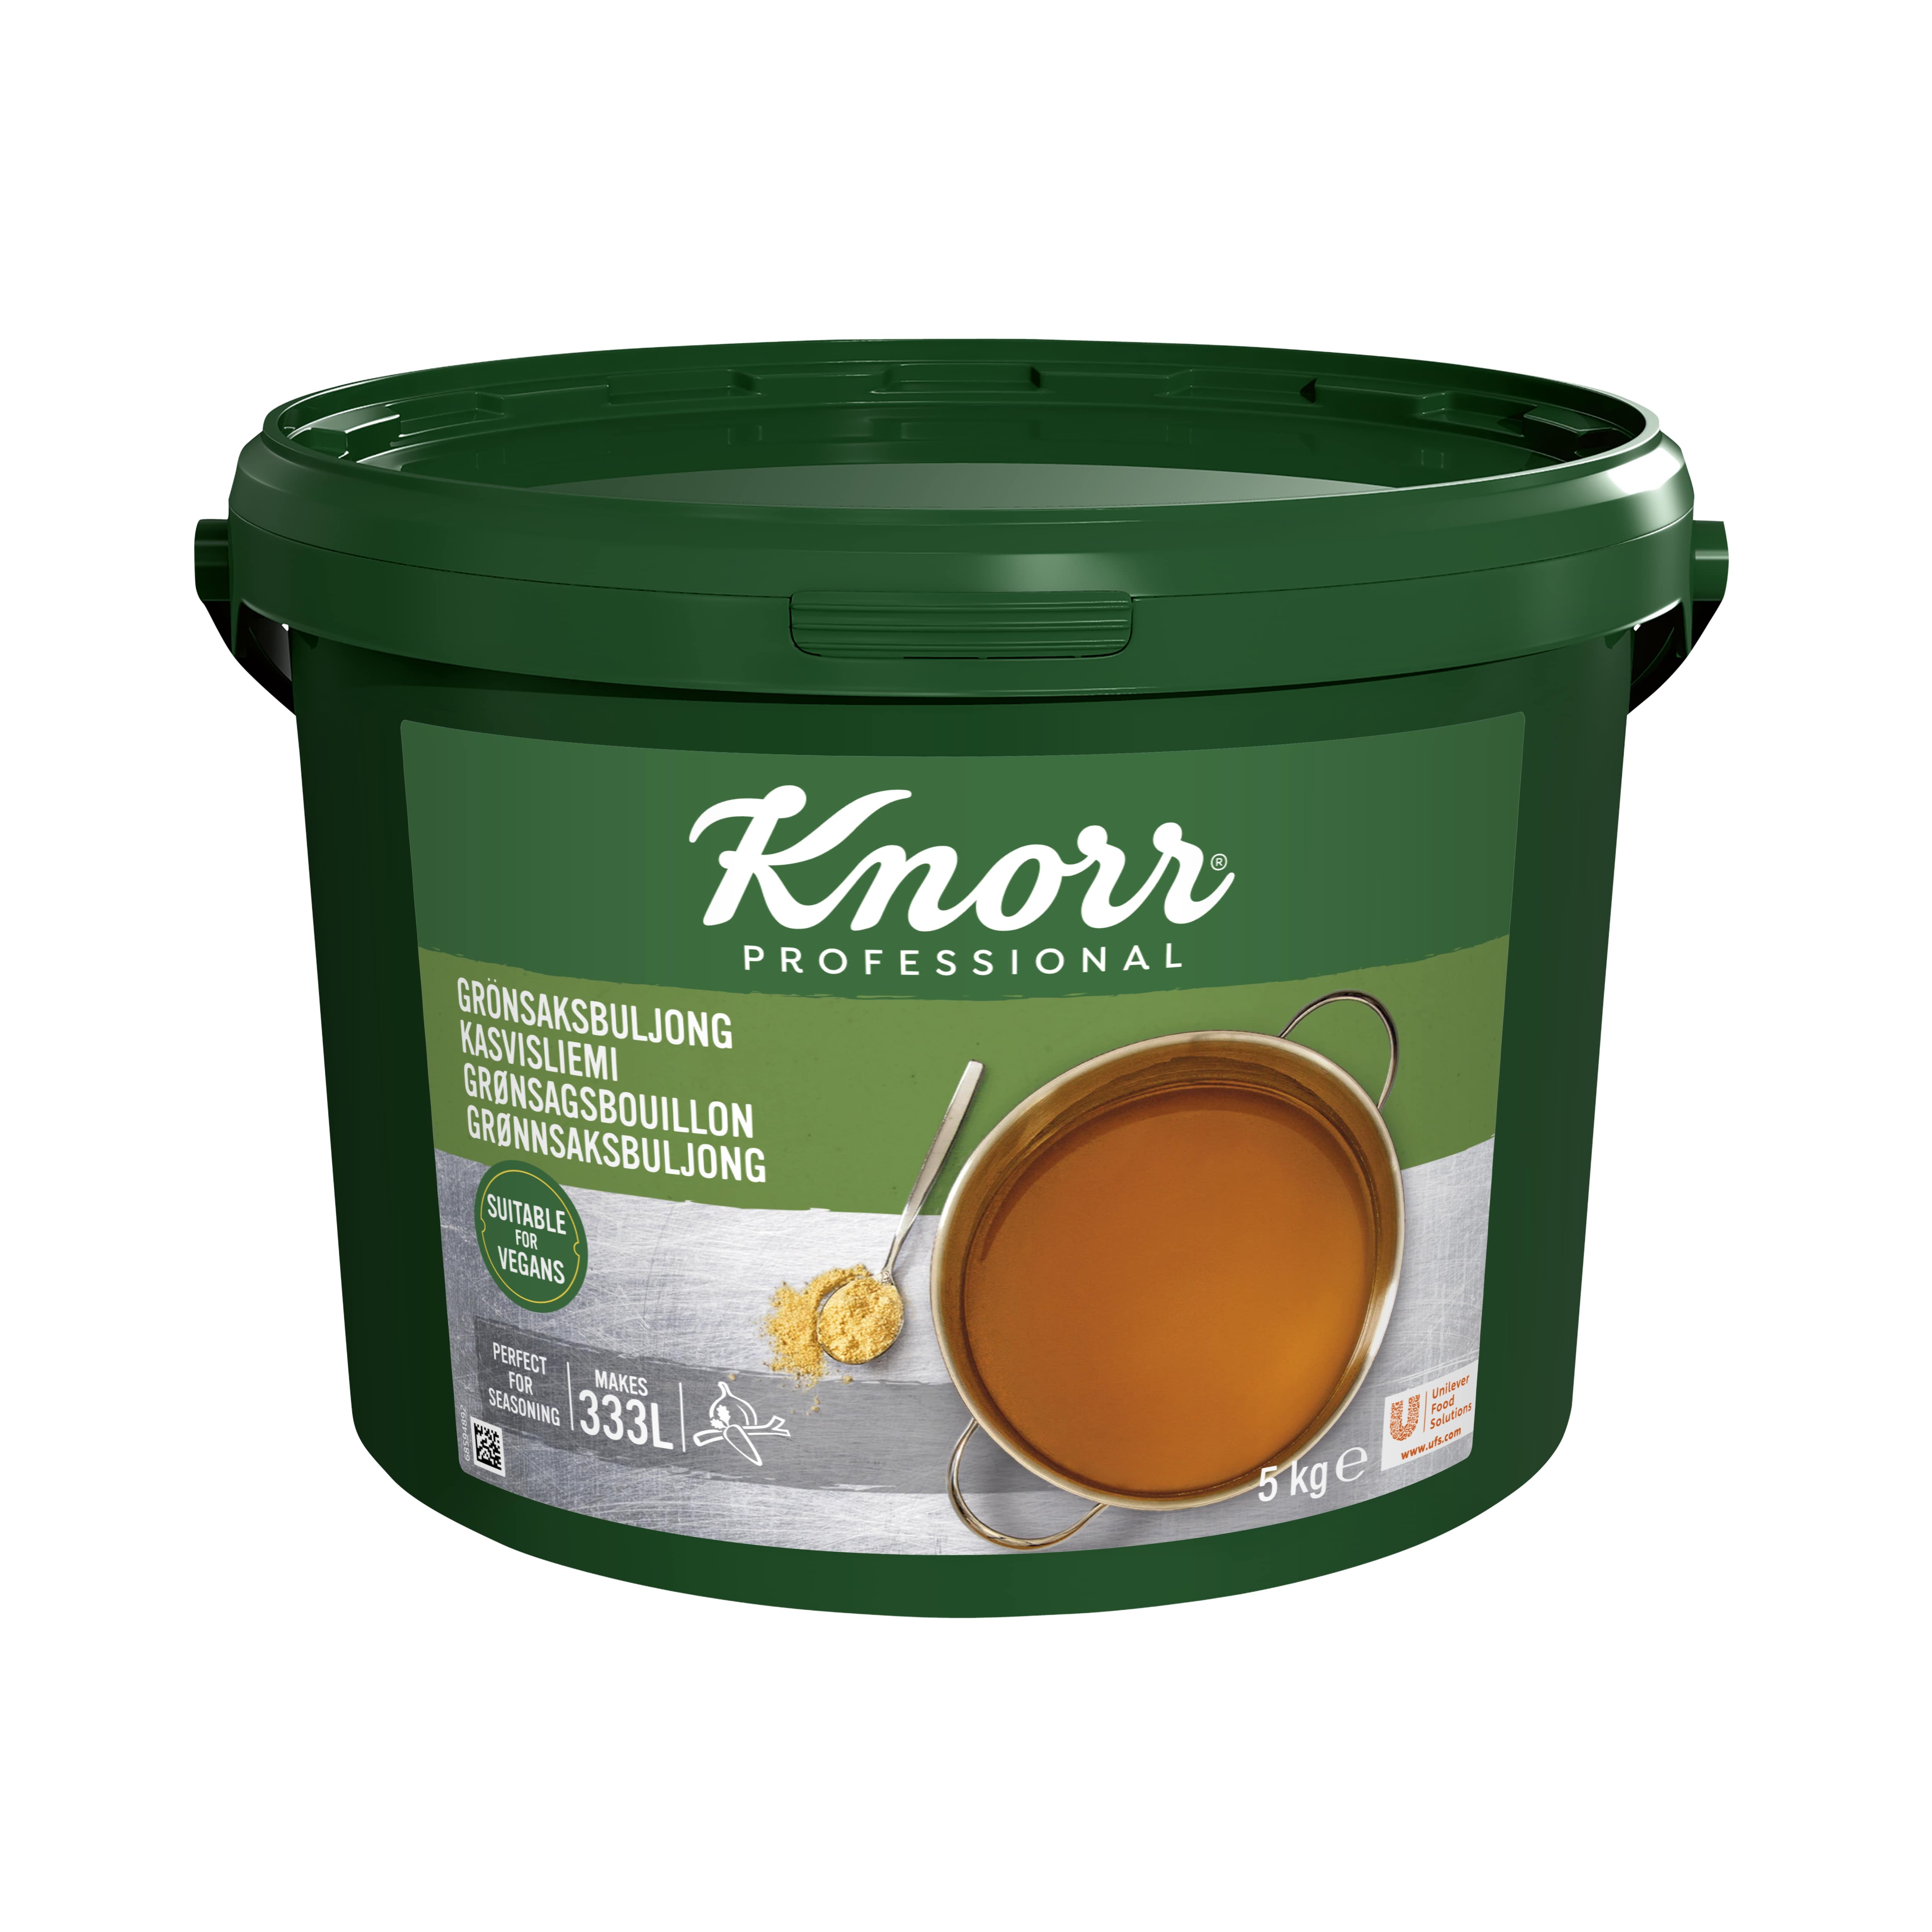 Knorr Kasvisliemi 5 kg / 333L - 